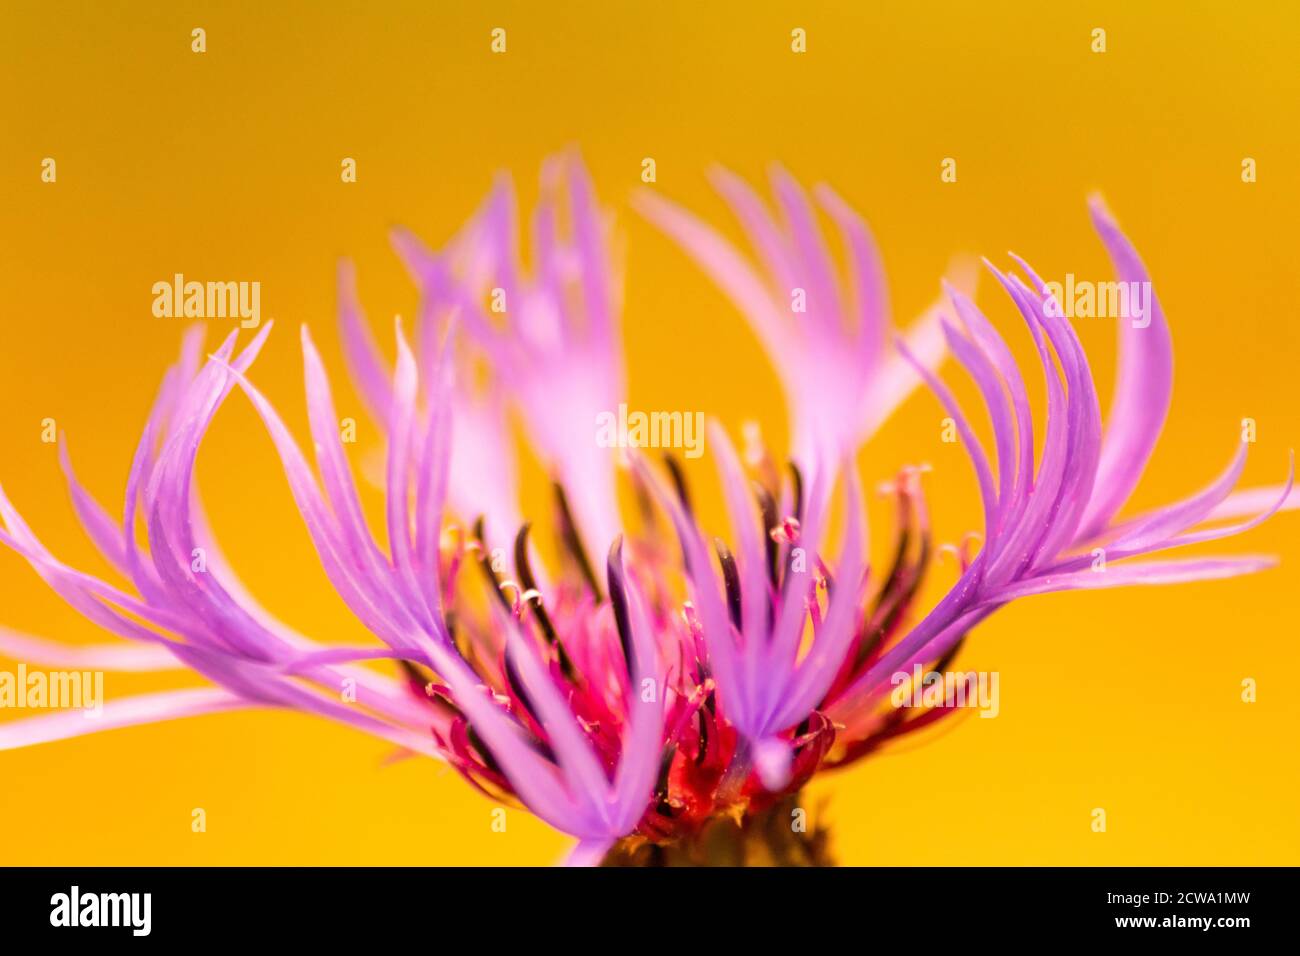 Ritratto di bellissimi fiori rosa-viola con intensi piselli gialli brillanti mostra la bellezza della primavera e i fiori filigranati in colpo pieno Foto Stock